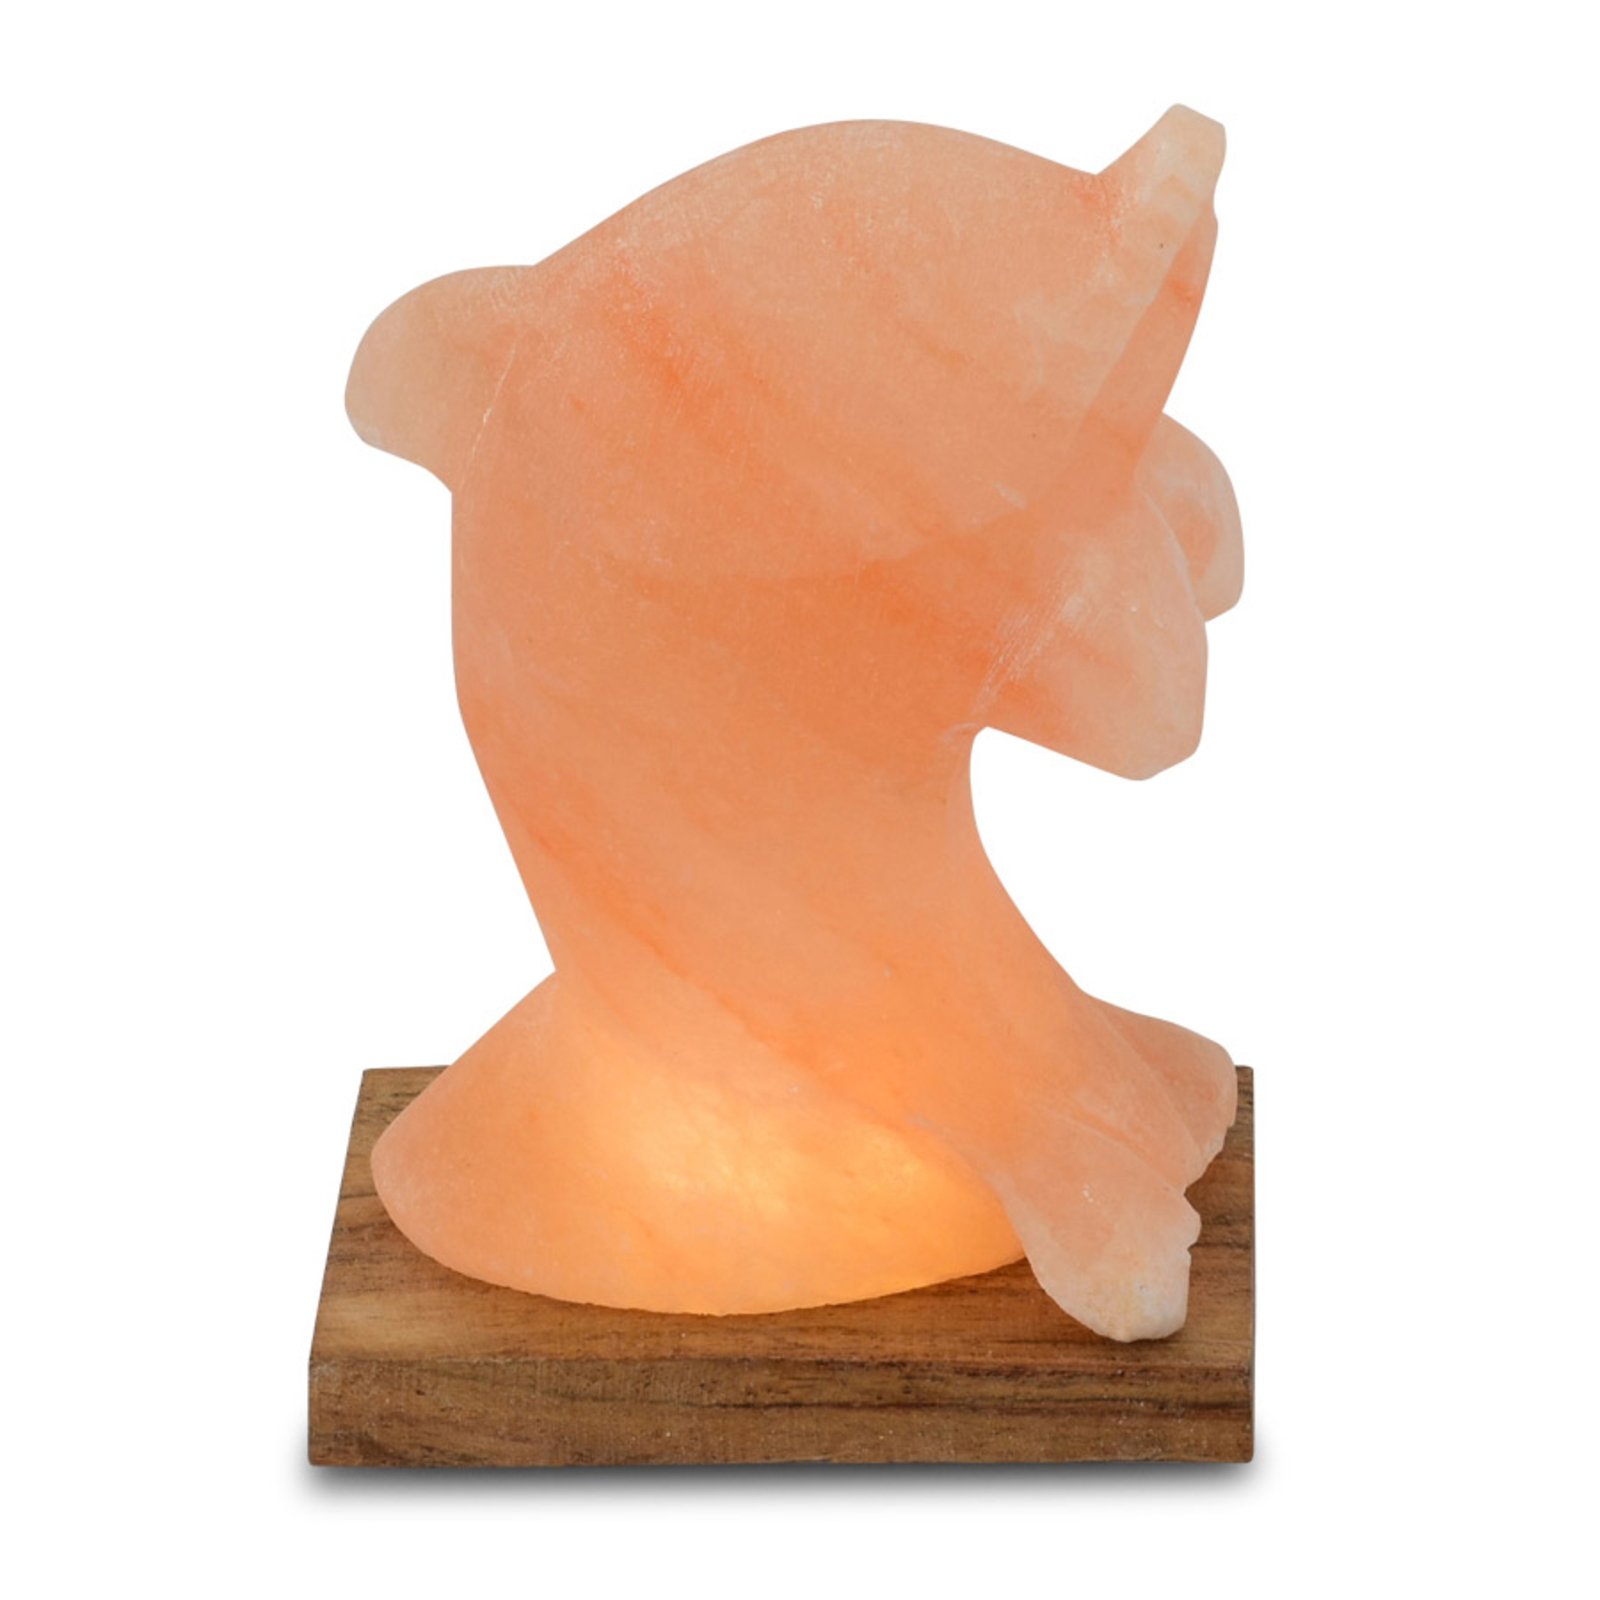 LED zoutlamp Delfin met lamphouder, barnsteen